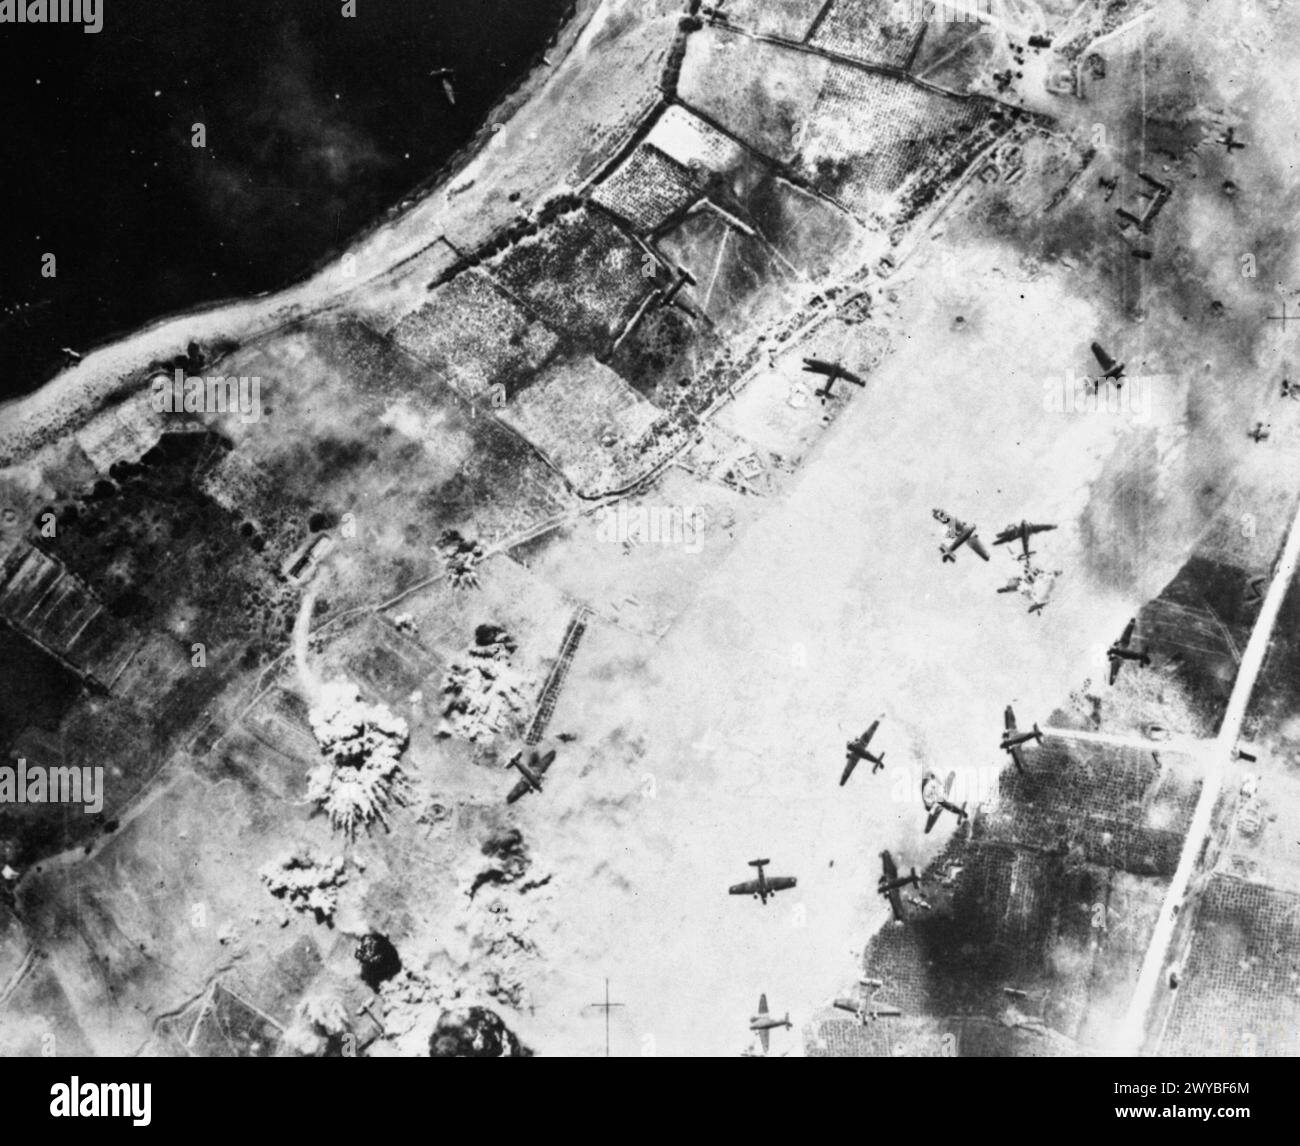 OPÉRATIONS DE LA ROYAL AIR FORCE À MALTE, GIBRALTAR ET EN MÉDITERRANÉE, 1940-1945. - Des bombes explosent sur l'aérodrome de Maleme, en Crète, lors d'un raid de jour par Bristol Blenheim Mark IV du No 14 Squadron RAF, volant de LG 21/Qotafiya III, Egypte. Les avions sont des Junkers Ju 52/3ms, la plupart d'entre eux dans un état naufragé à la suite de l'atterrissage de troupes aéroportées sur l'aérodrome le 21 mai 1941, lors de l'invasion allemande de l'île. , Royal Air Force, 14e escadron Banque D'Images